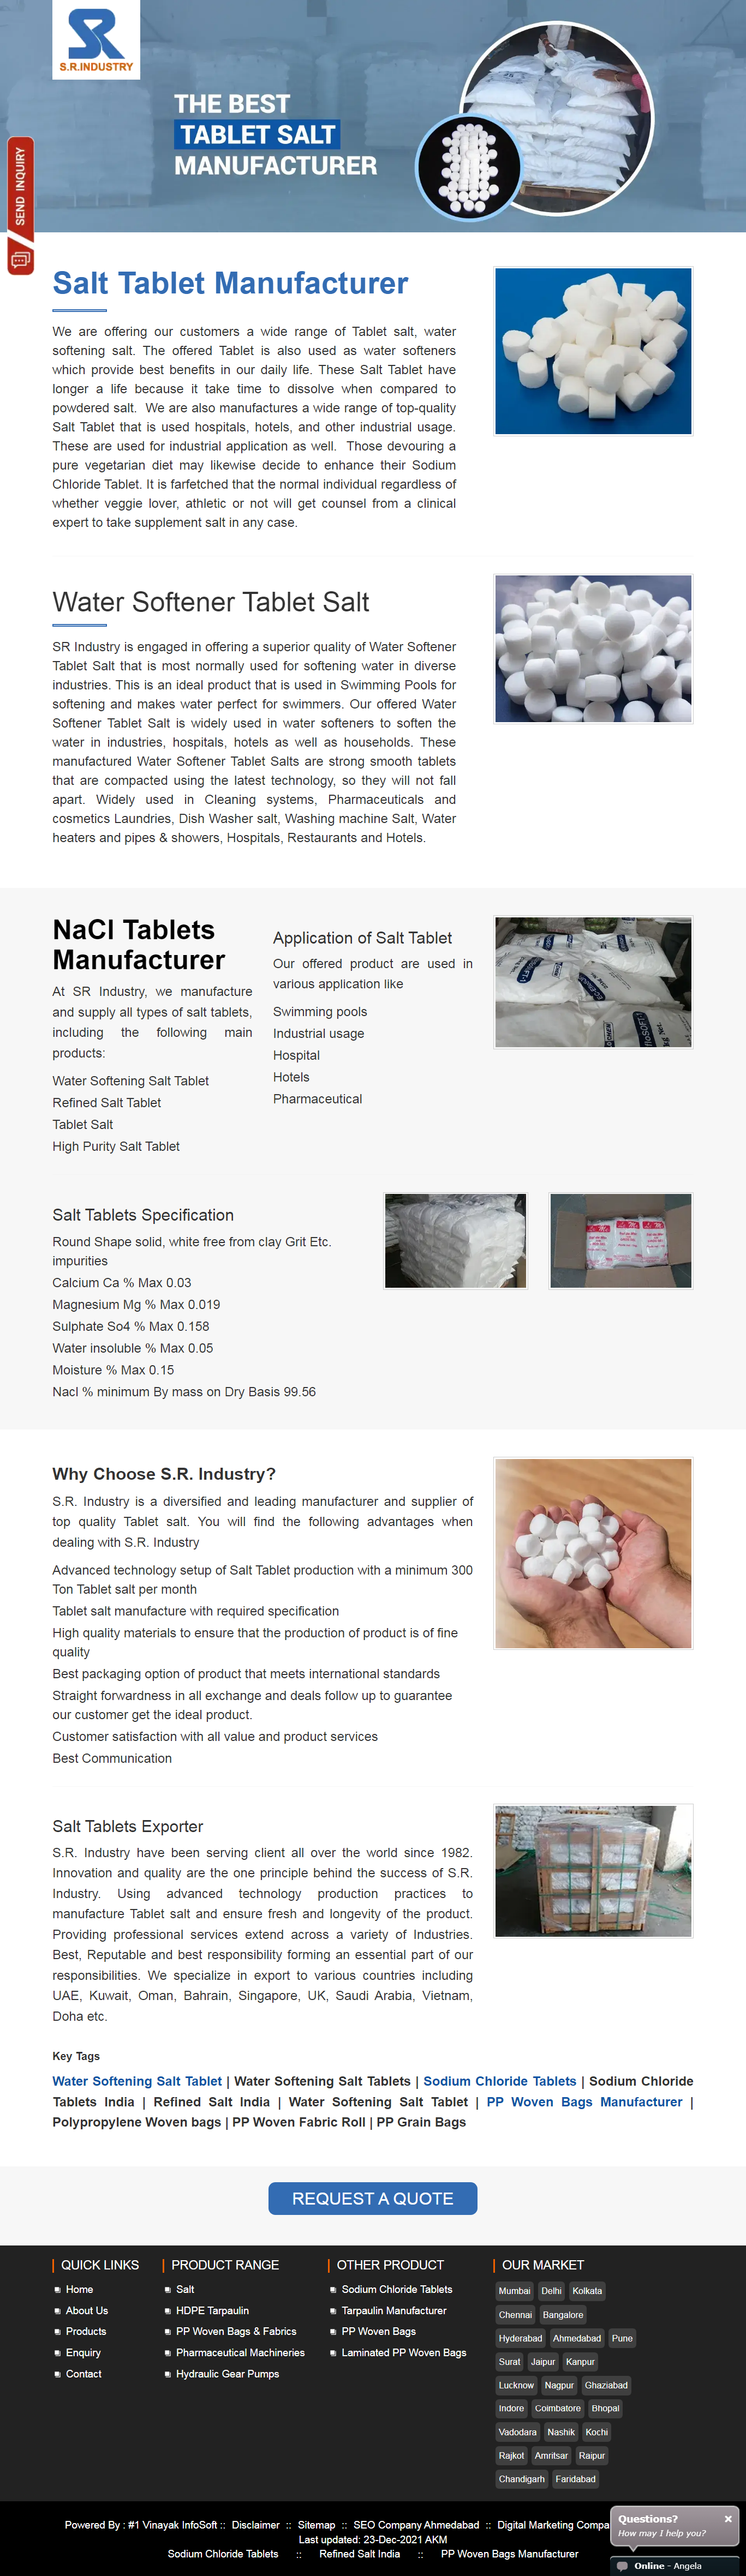 salt-tablets